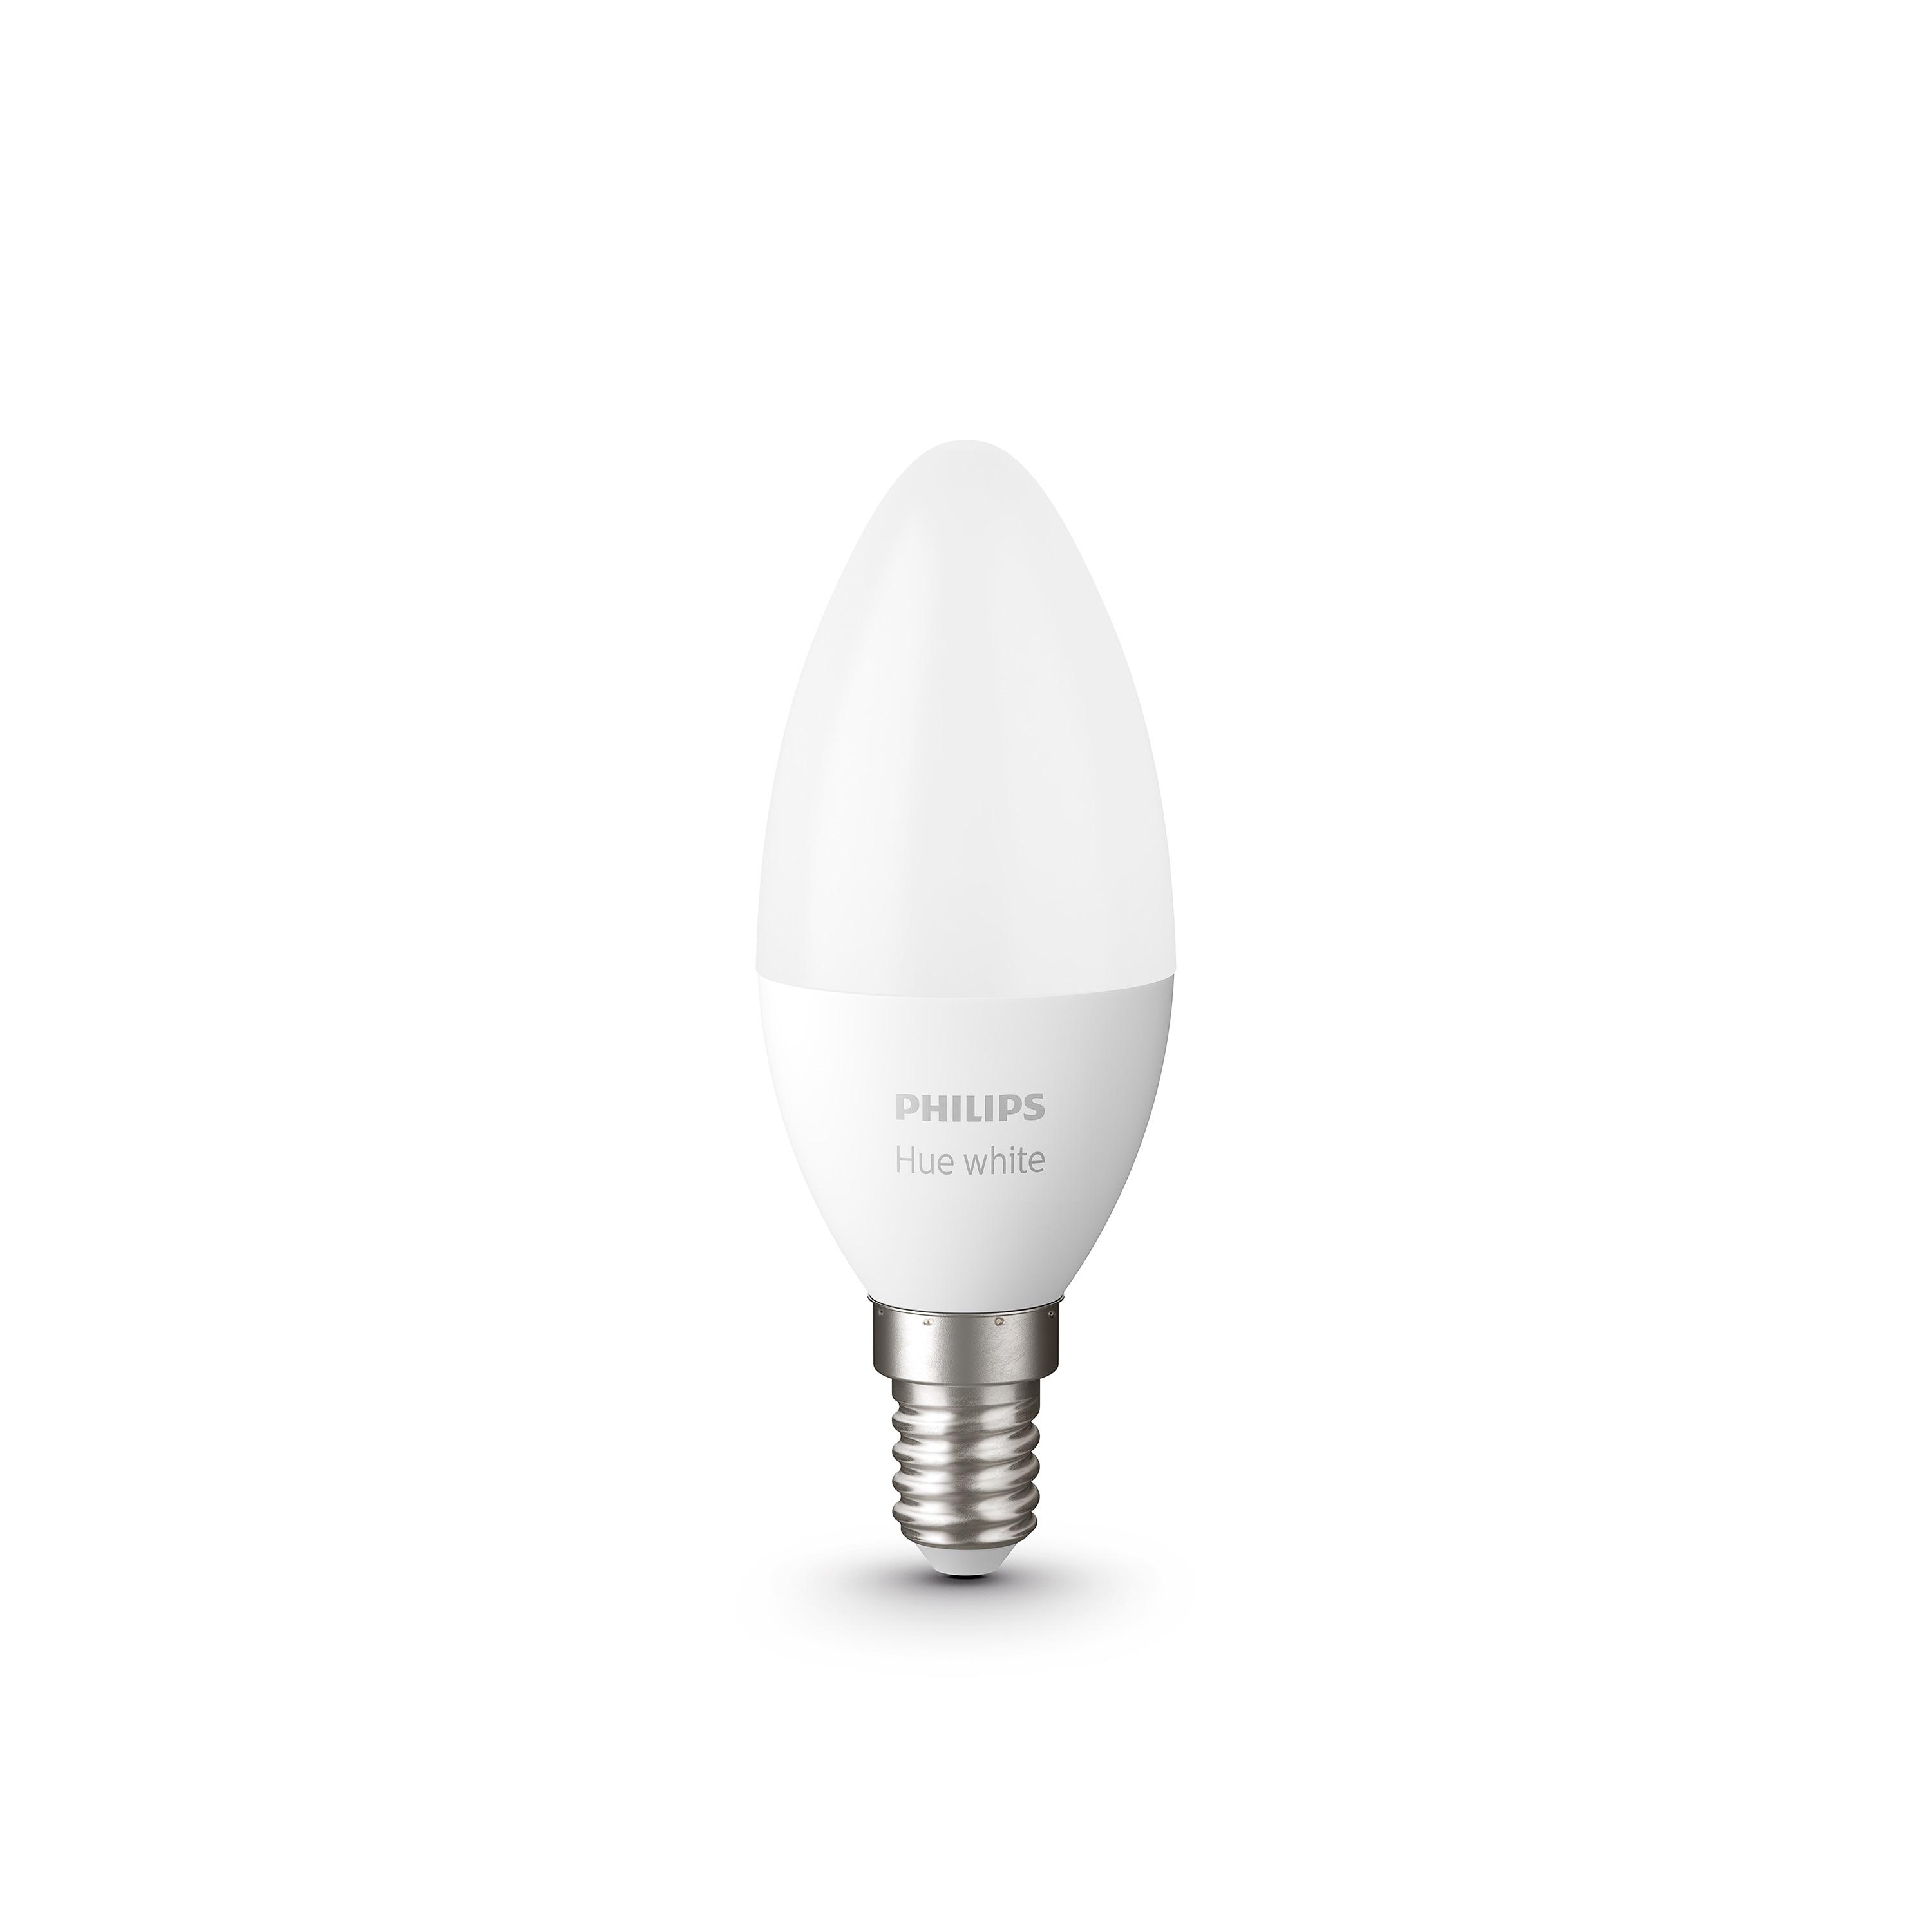 Лампа Philips светодиодная Philips Led Hue E14 5.5W(40W) 2700K Bluetooth Dim набор 2 шт (929002039904)